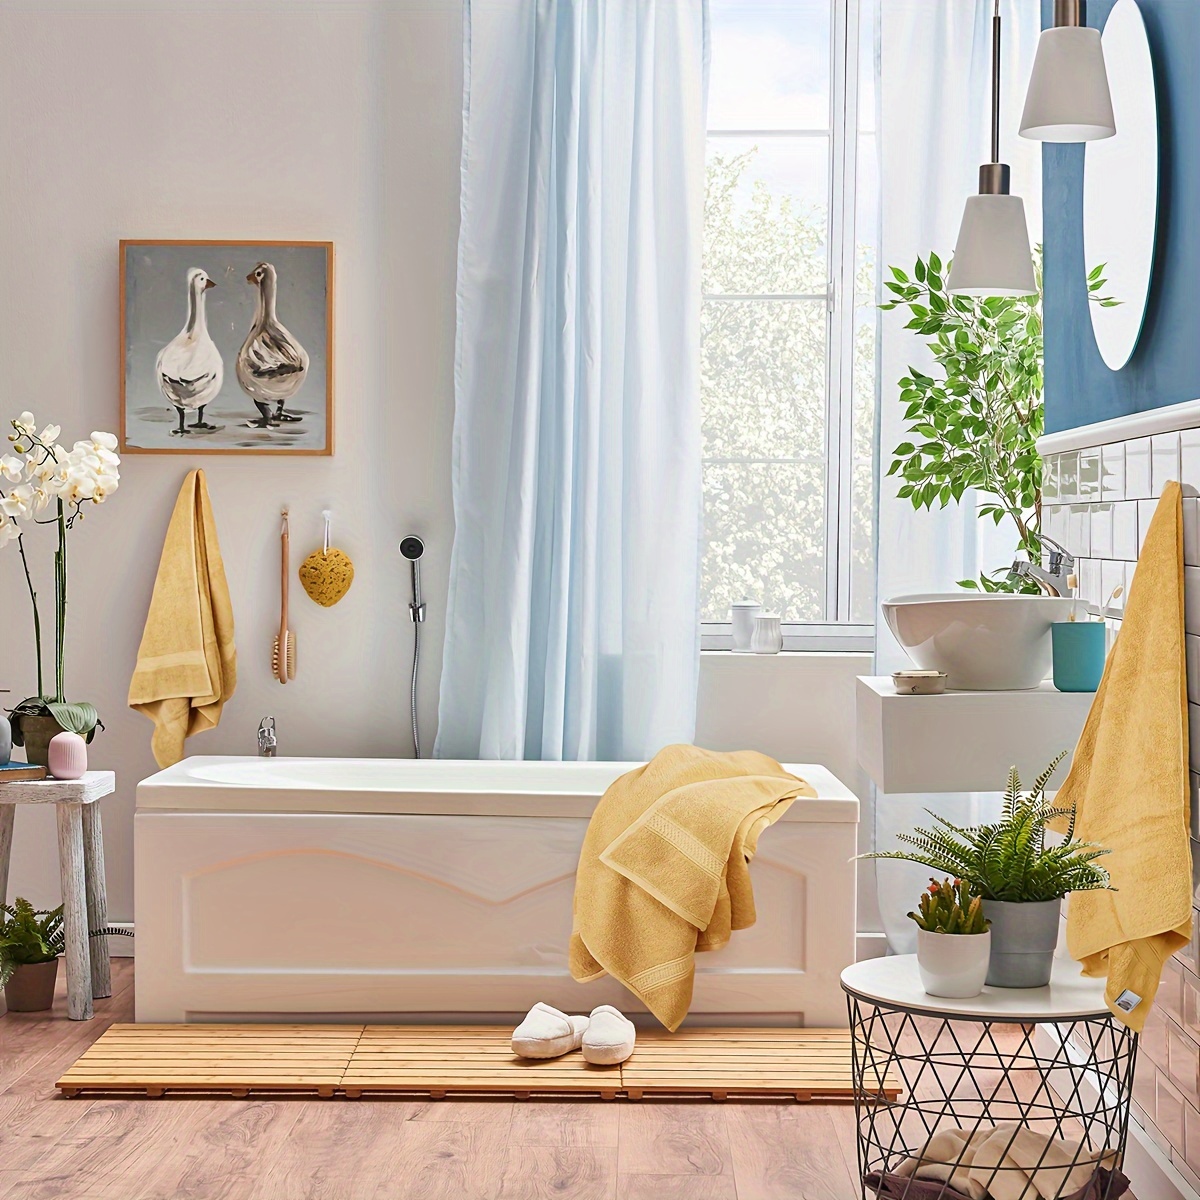 Solid Color Towels Set, Soft Absorbent Towel For Bathroom, 2 Bath Towels, 2  Hand Towels, 4 Washcloths, Bathroom Accessories - Temu